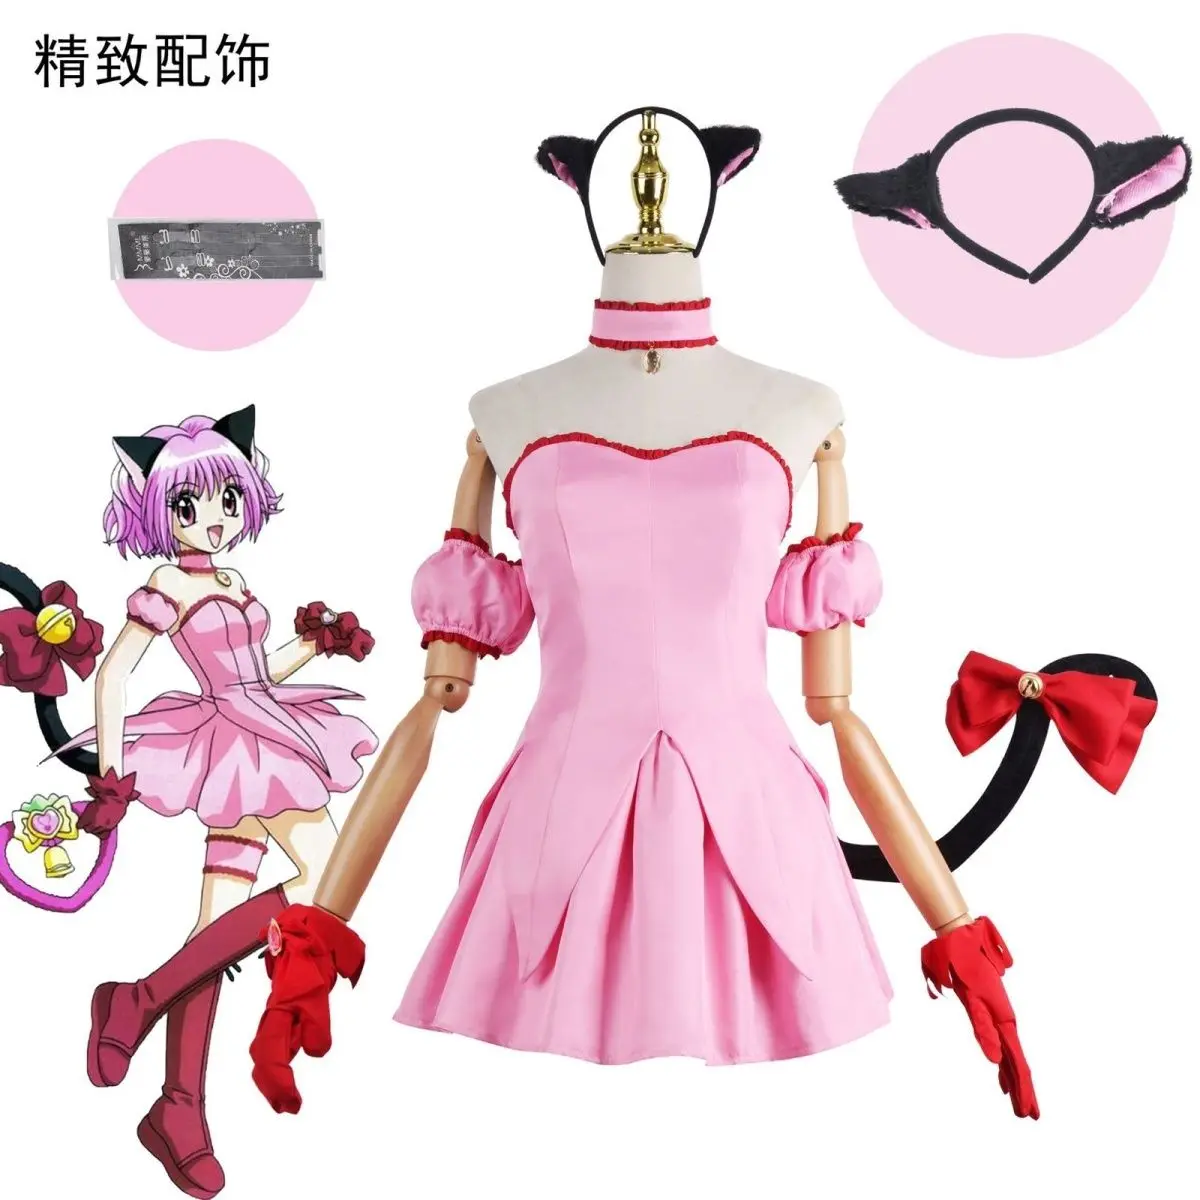 

Аниме Токио Mew Momomiya Ichigo Косплей Клубника женские костюмы для косплея розовое платье перчатки хвост Милая униформа